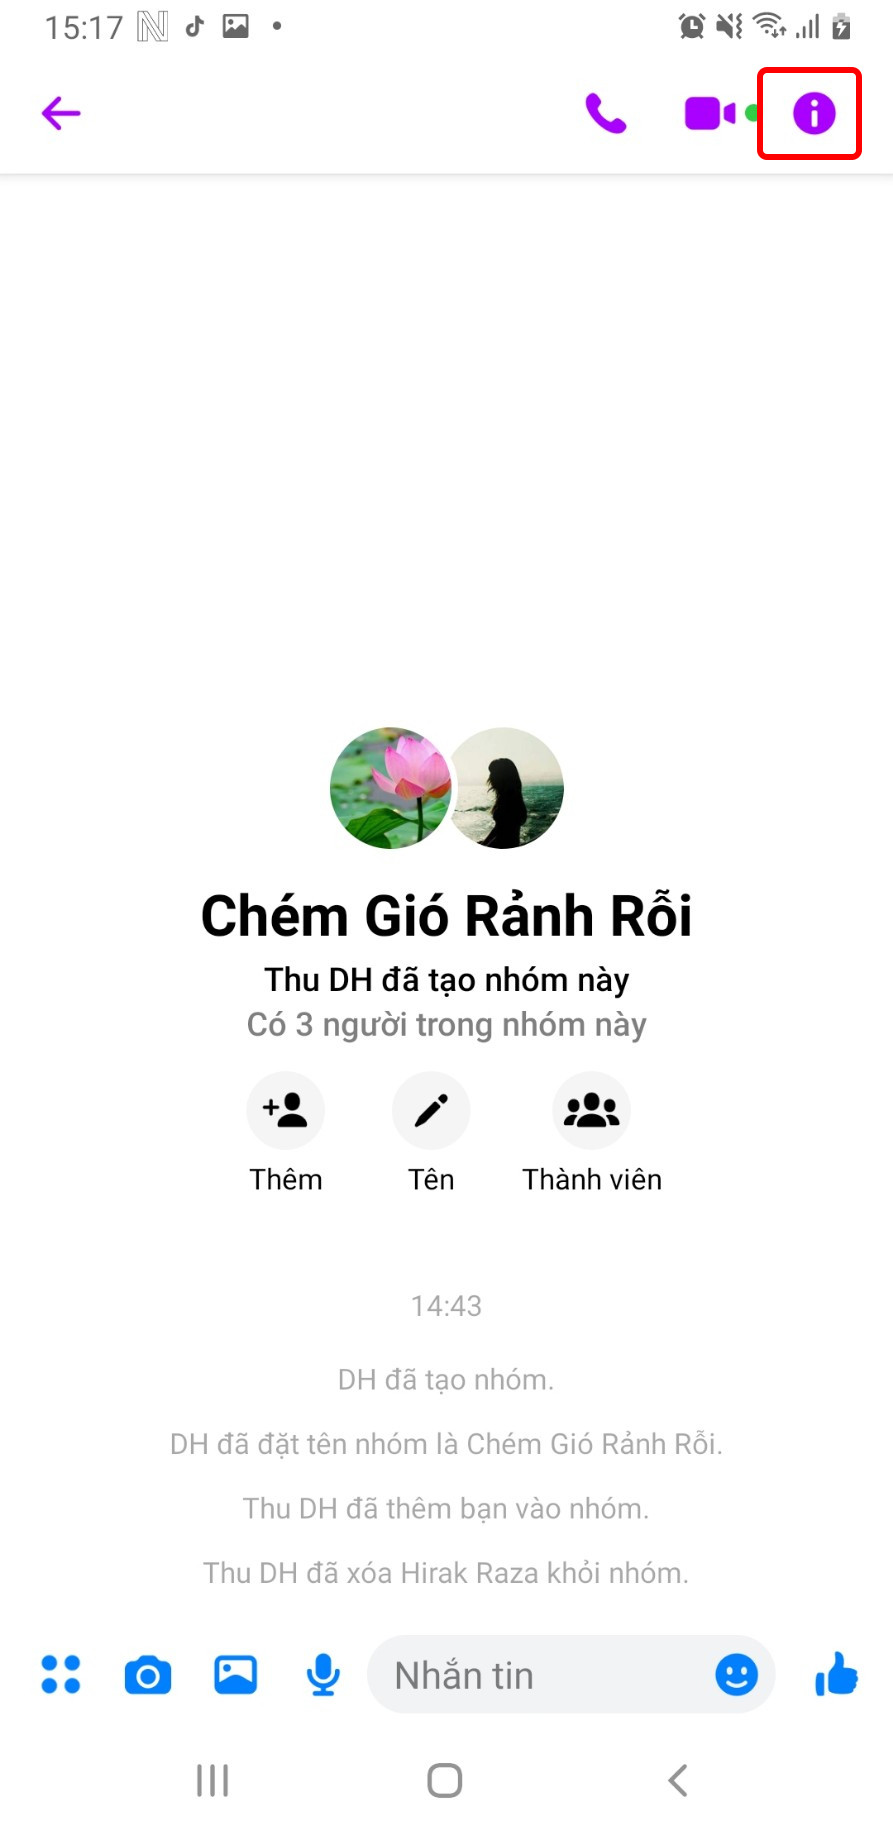 Chọn Remove frome group chat (xóa ra khỏi nhóm)